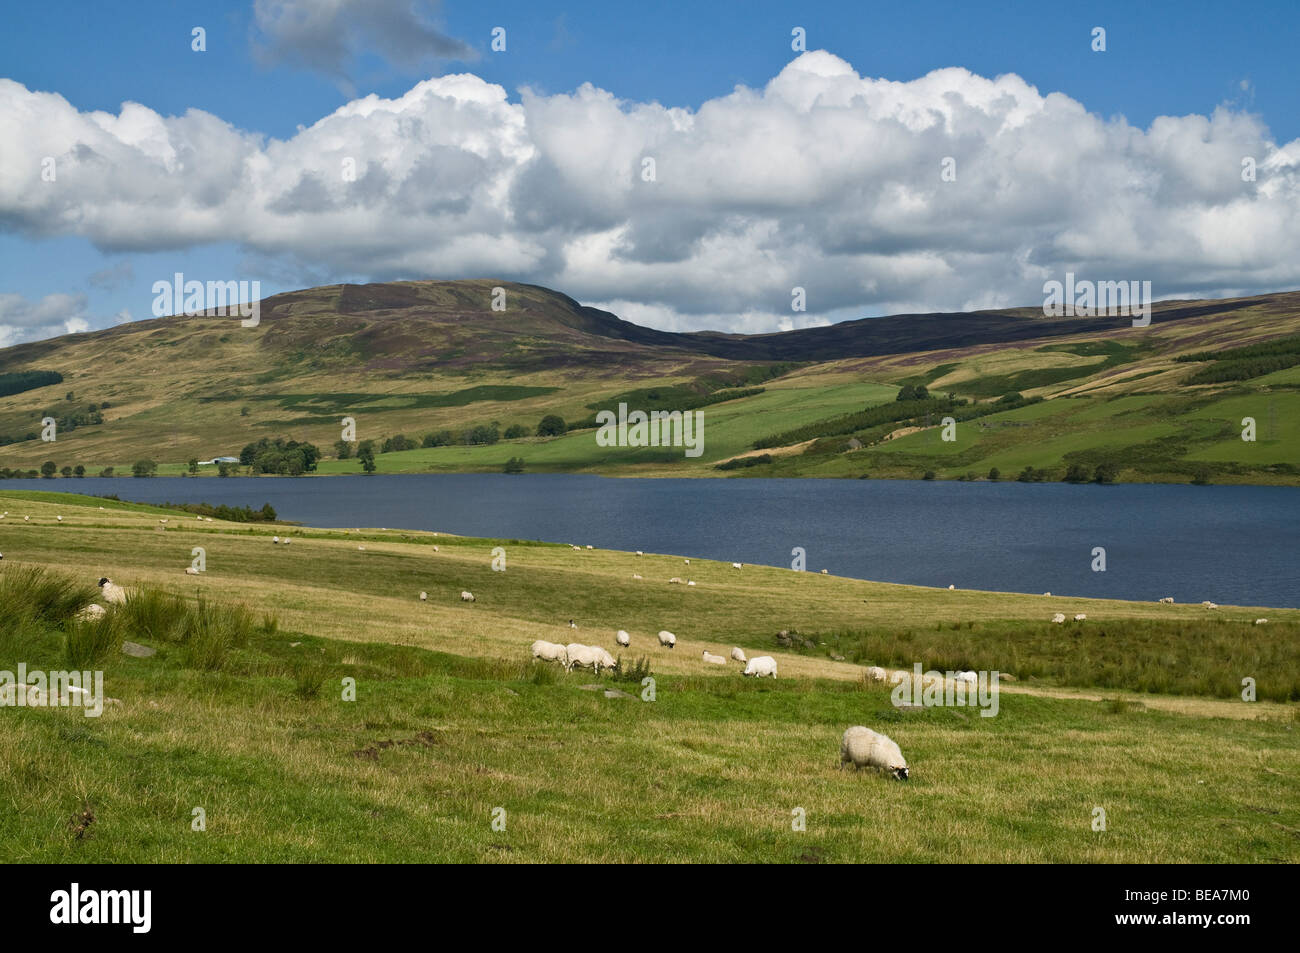 dh Loch Freuchie Glen QUAICH PERTHSHIRE Schottische Landschaft Schafe weiden auf dem Feld Schottland Sommer schöne Hochlandlandschaften Hochland Landschaft Stockfoto